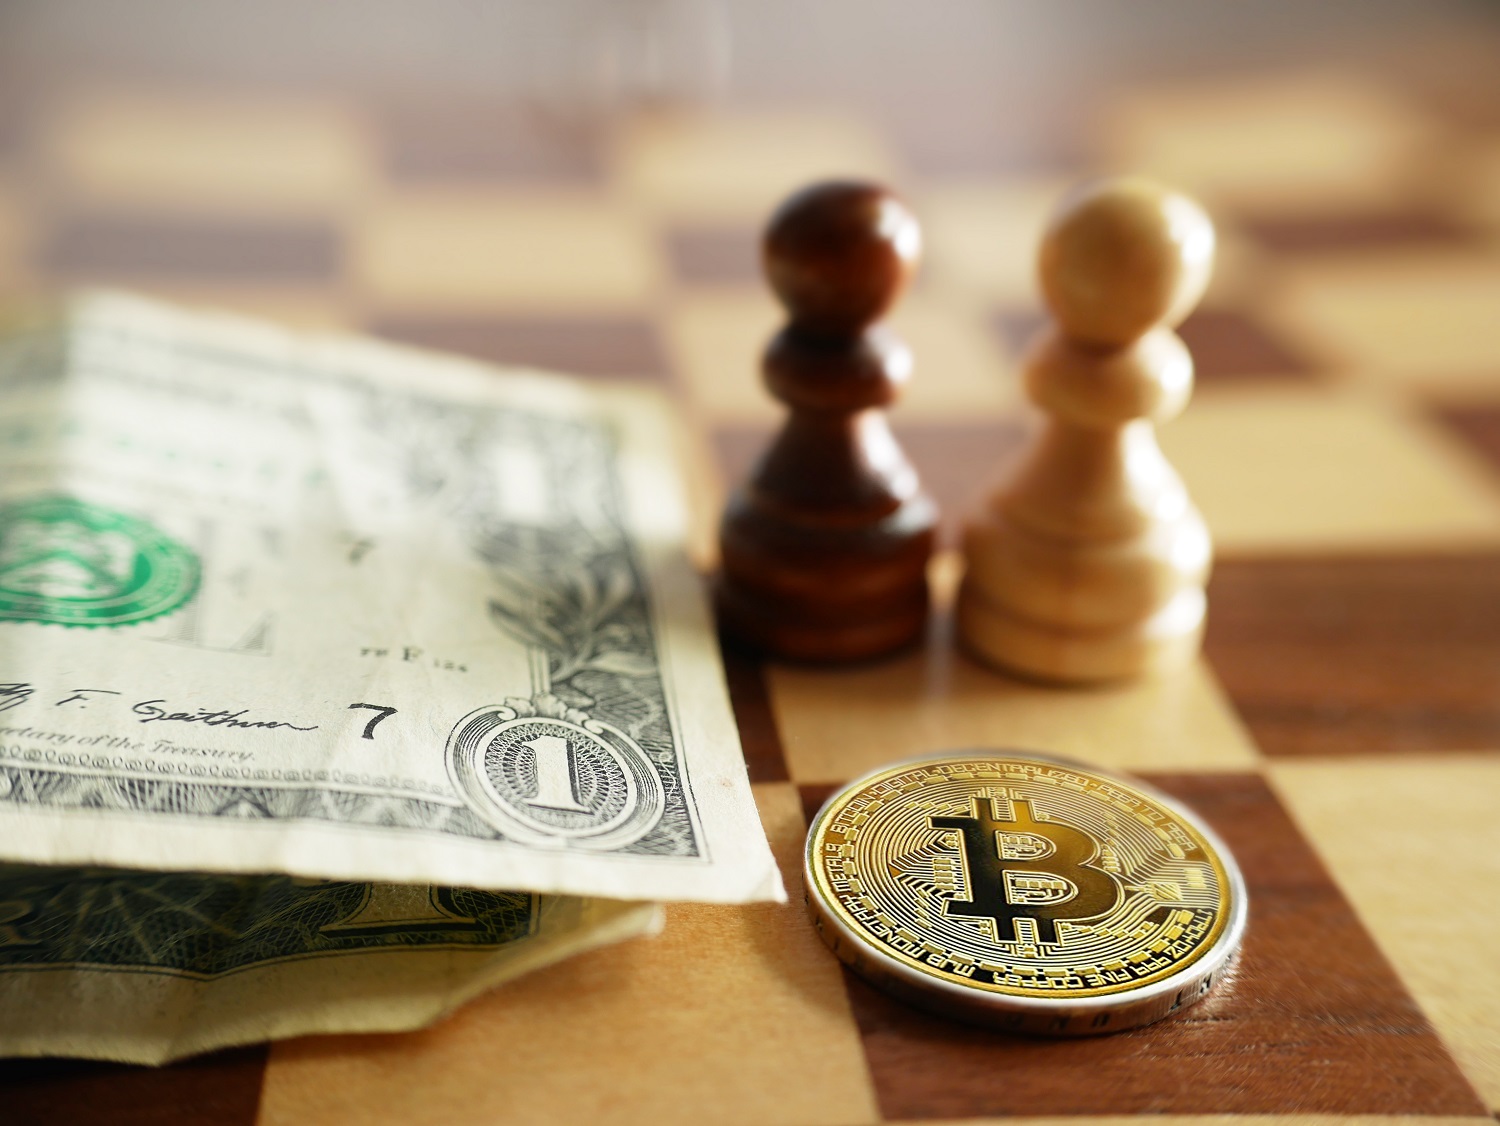 Kim loại token dự định đại diện cho Bitcoin bên cạnh các tờ đô la Mỹ trên bàn cờ với các quân cờ.